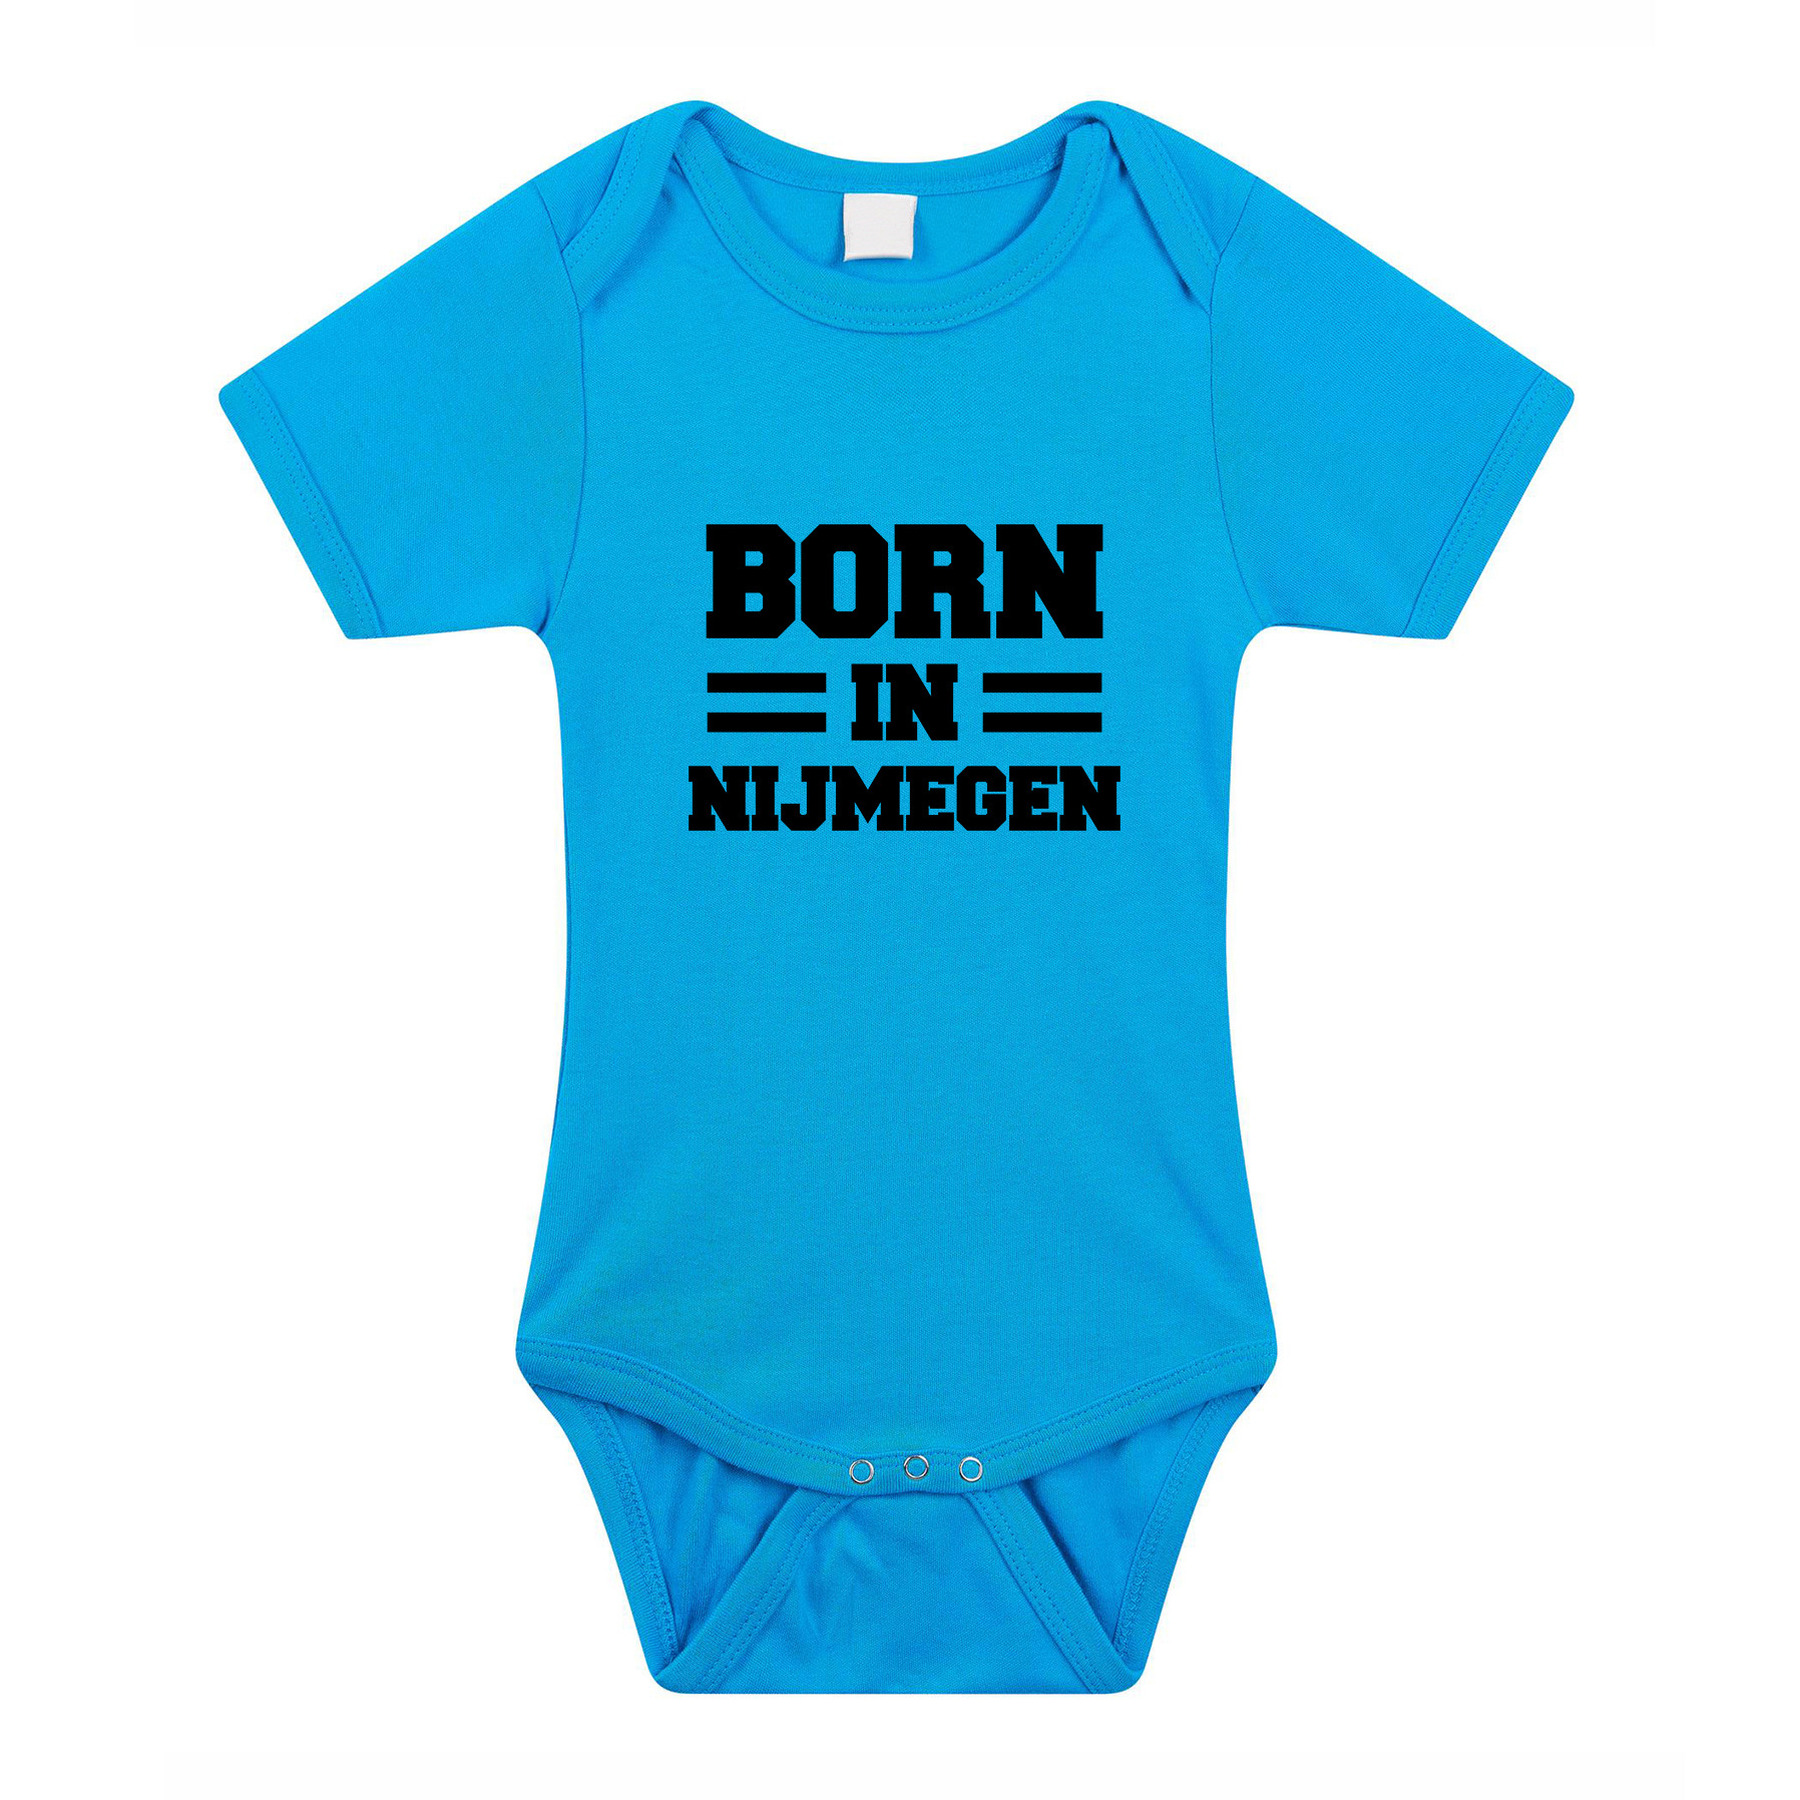 Born in Nijmegen cadeau baby rompertje blauw jonegs